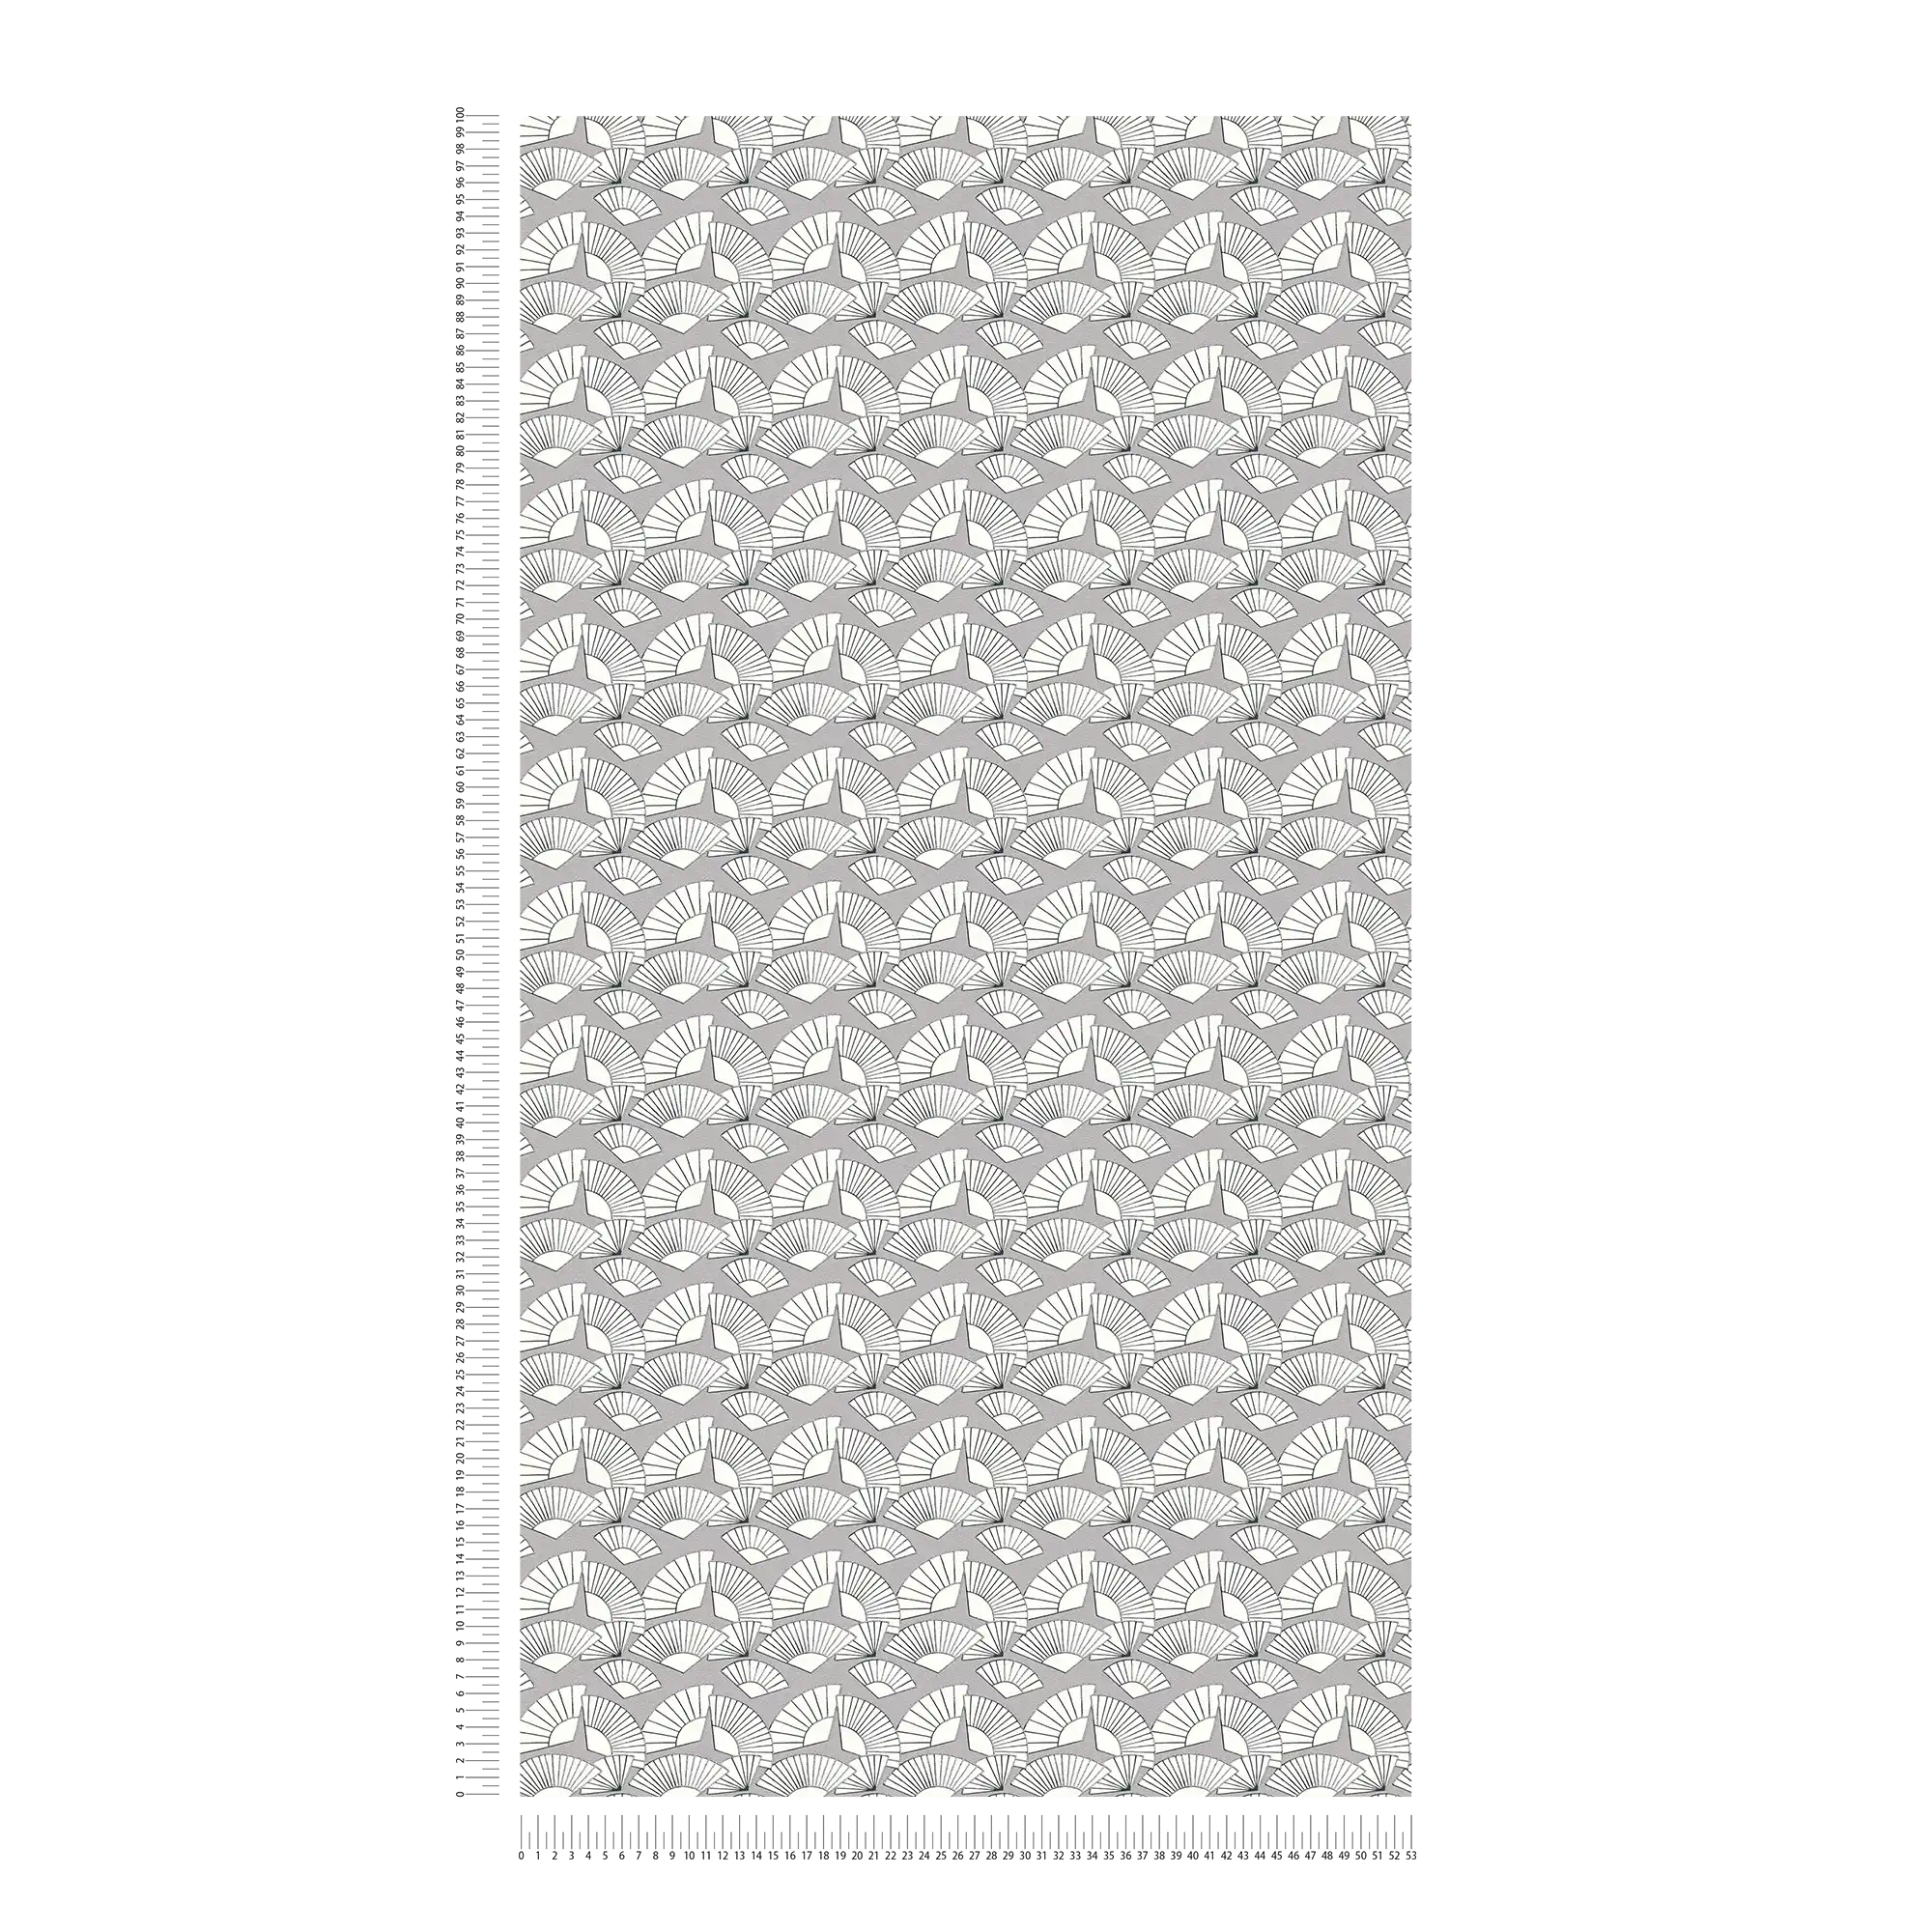             Wallpaper Karl LAGERFELD fan pattern - metallic, white
        